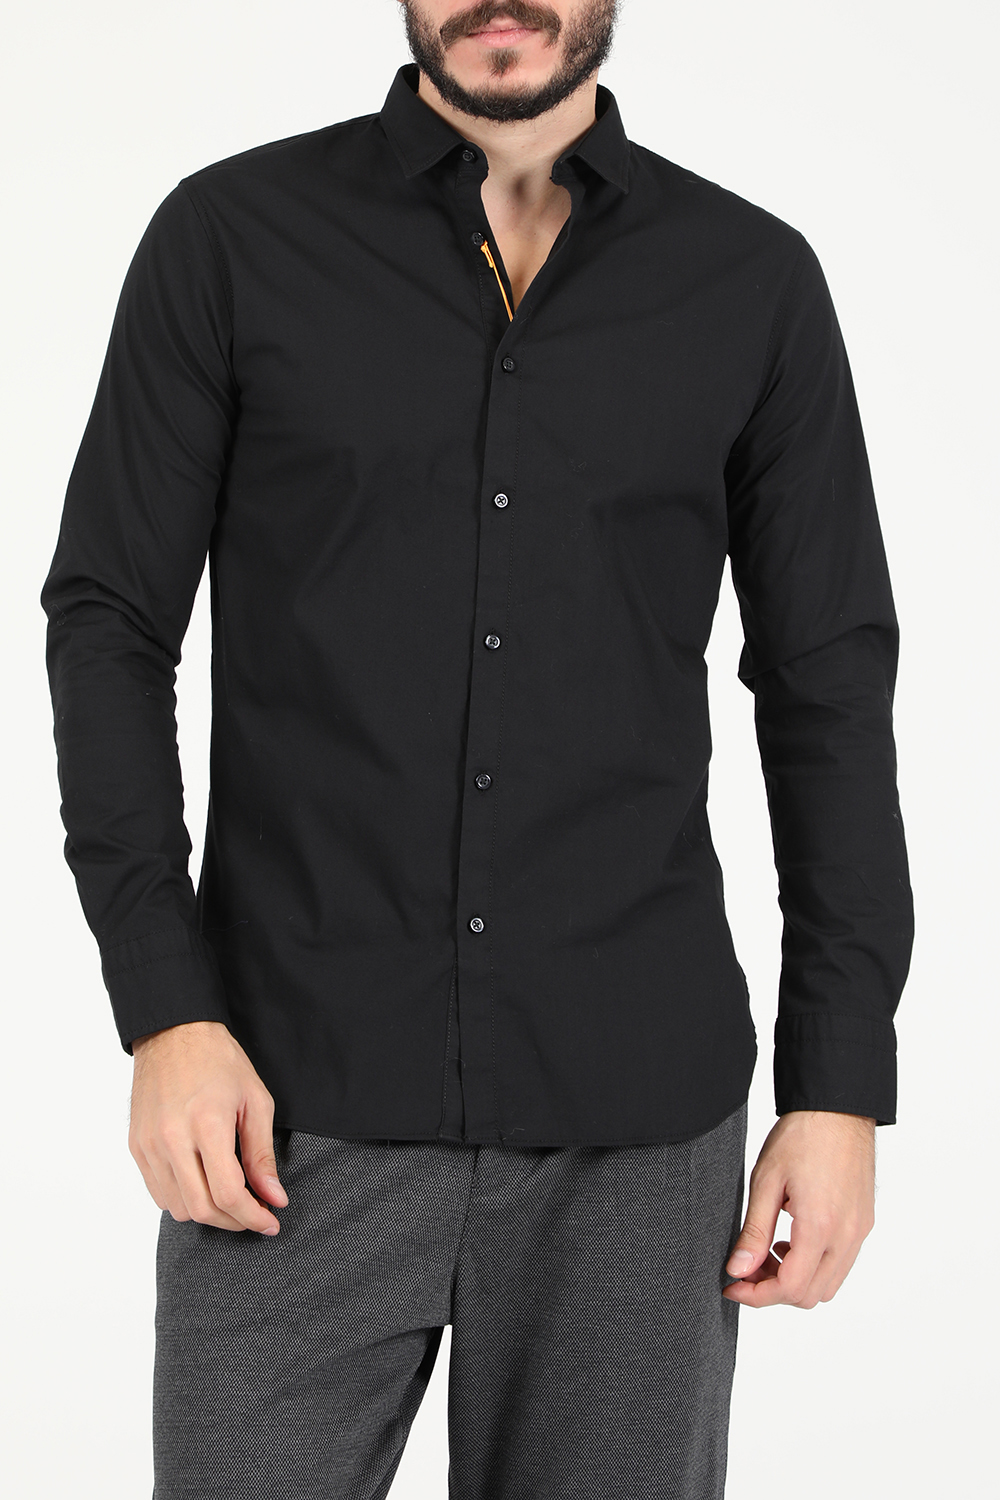 Ανδρικά/Ρούχα/Πουκάμισα/Μακρυμάνικα BOSS - Ανδρικό βαμβακερό πουκάμισο BOSS Mabsoot_1 μαύρο